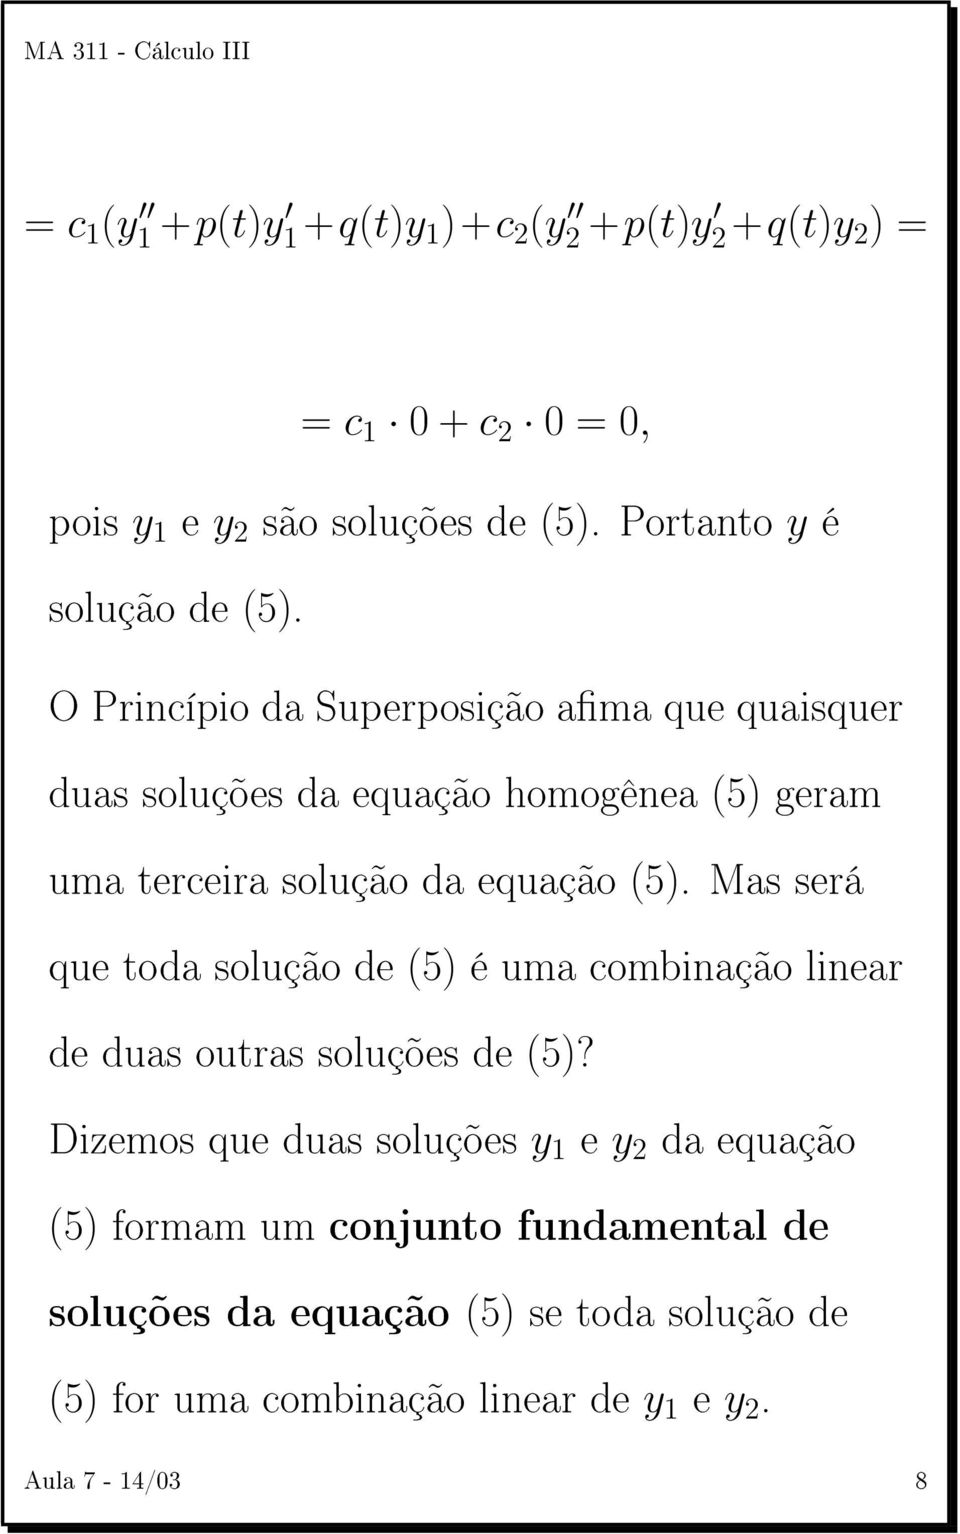 O Princípio da Superposição ama que quaisquer duas soluções da equação homogênea (5) geram uma terceira solução da equação (5).